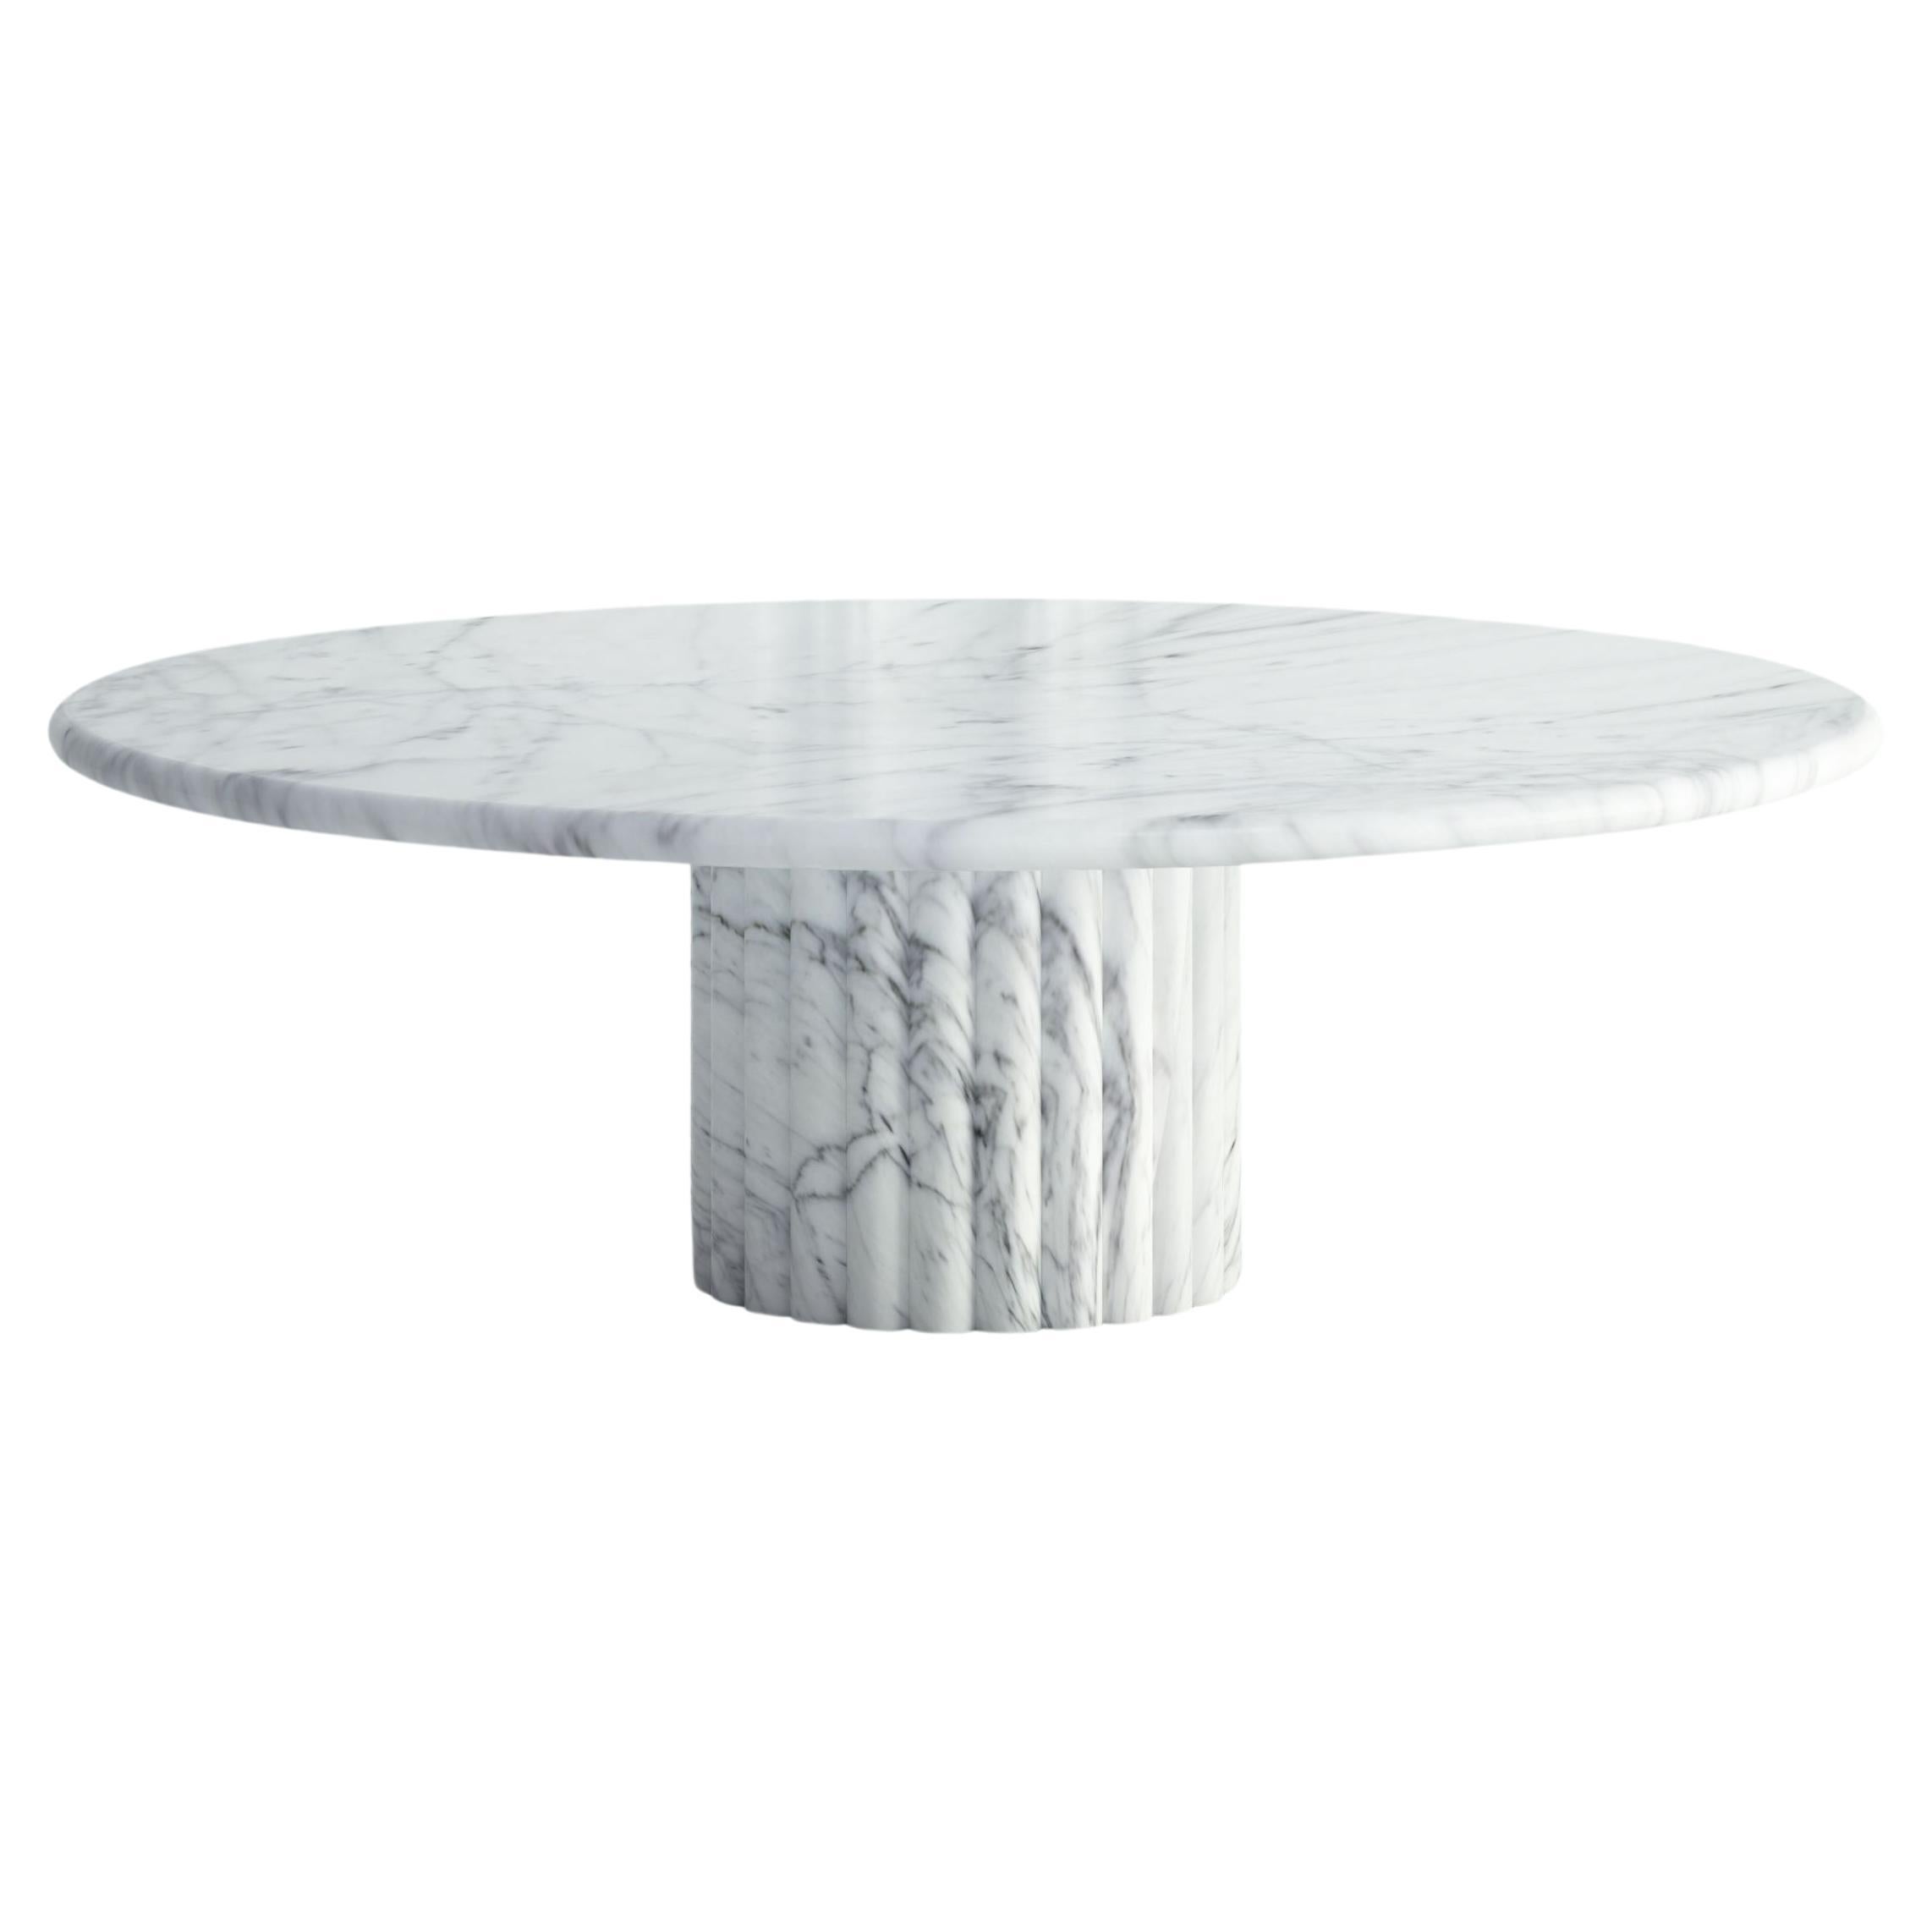 The Luci :  Table basse moderne avec plateau et base ronds